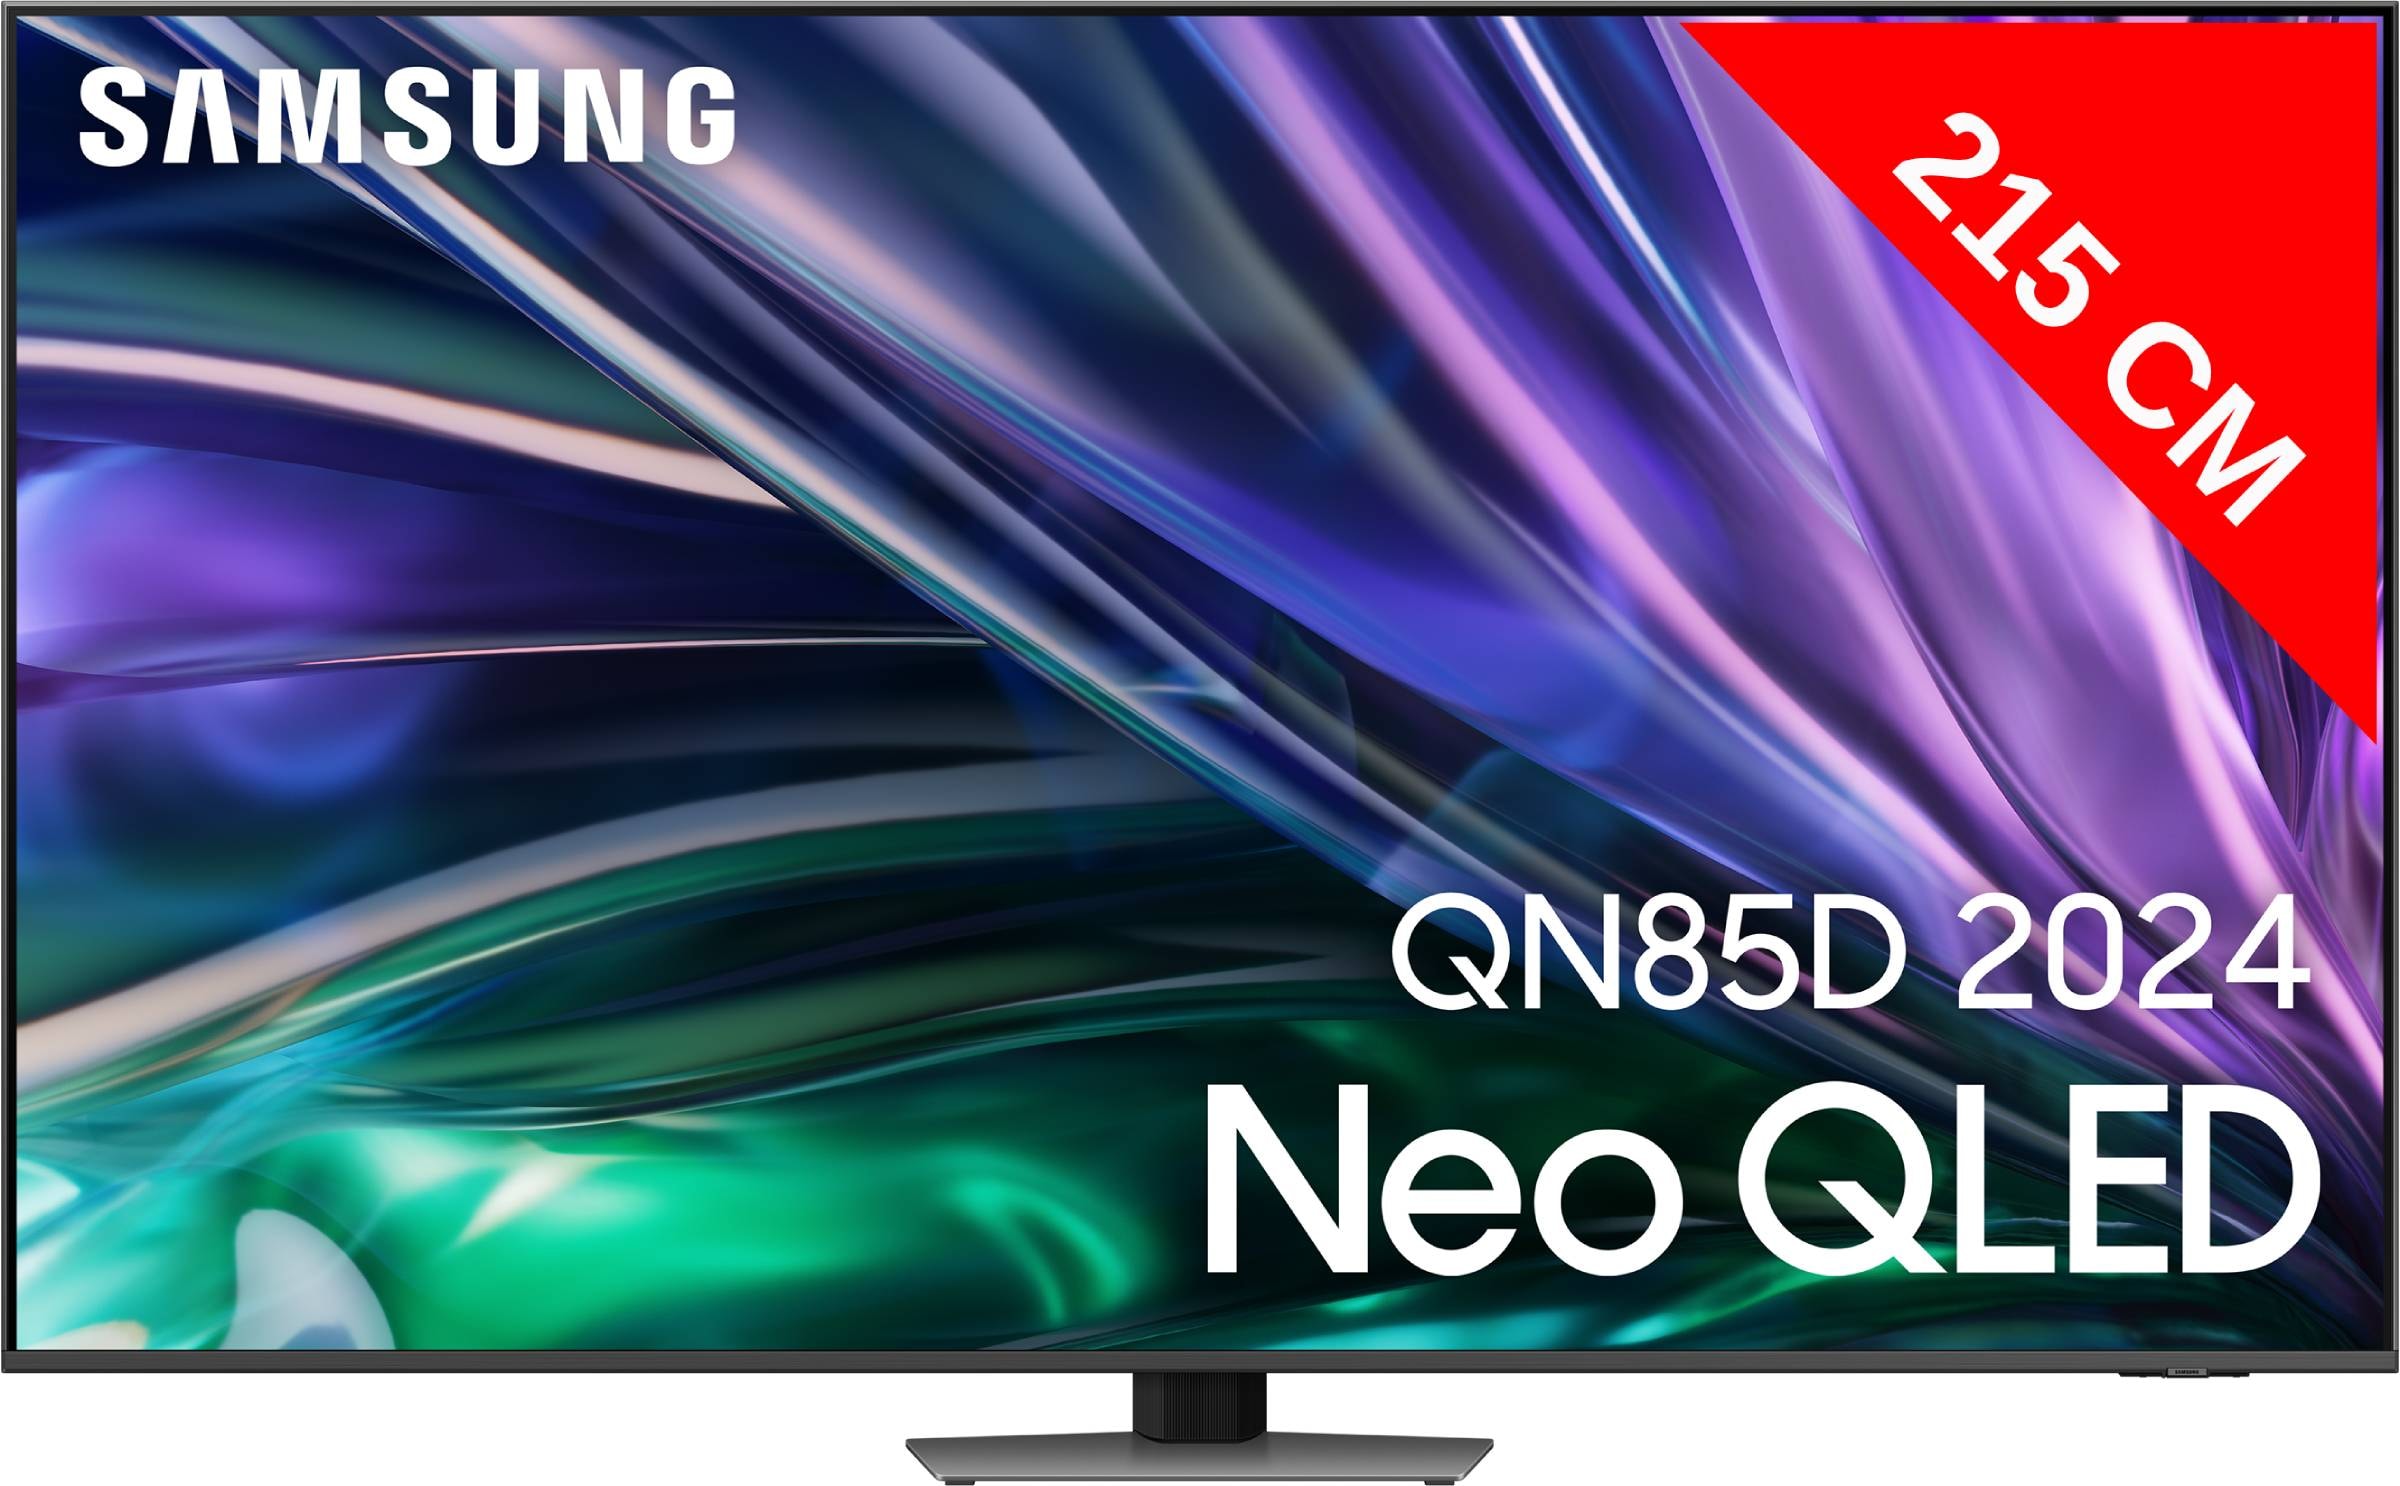 SAMSUNG TV Neo QLED 8K 214 cm Mini Led Ultra HD 85" - TQ85QN85D